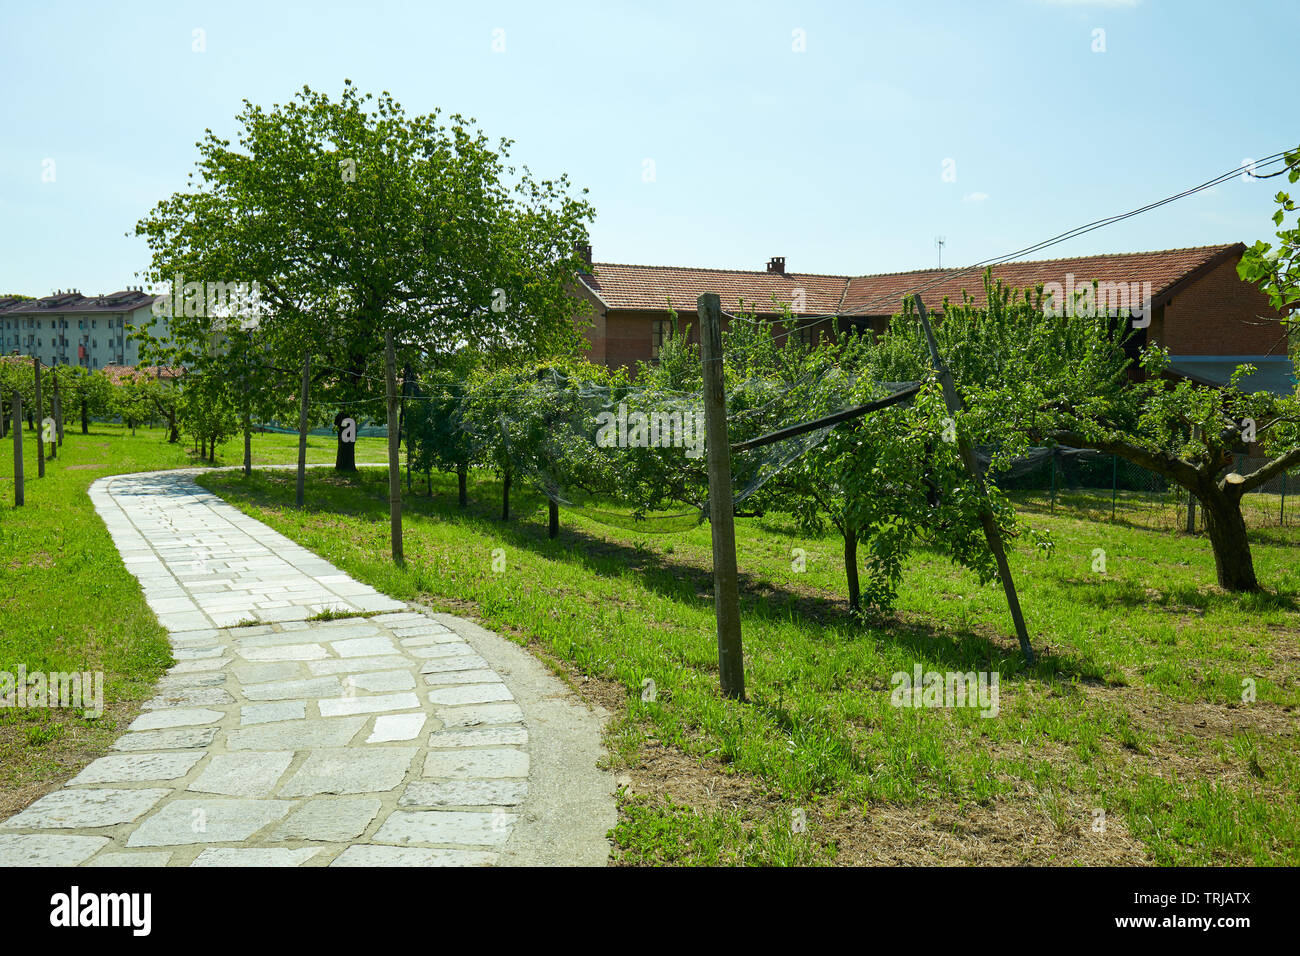 In piastrelle di pietra percorso, frutteto e casa rurale in una soleggiata giornata estiva, Italia Foto Stock